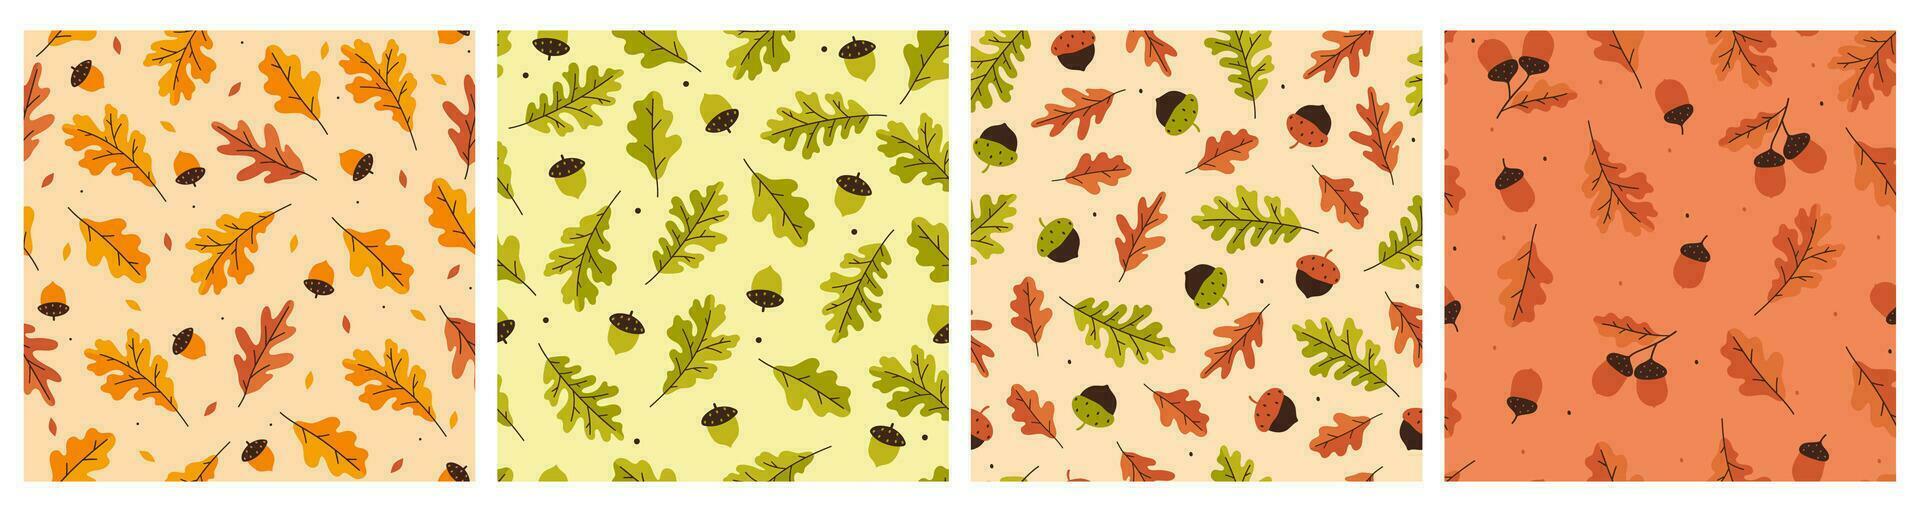 verzameling van herfst naadloos patronen met eikels en eik bladeren. vector grafiek.